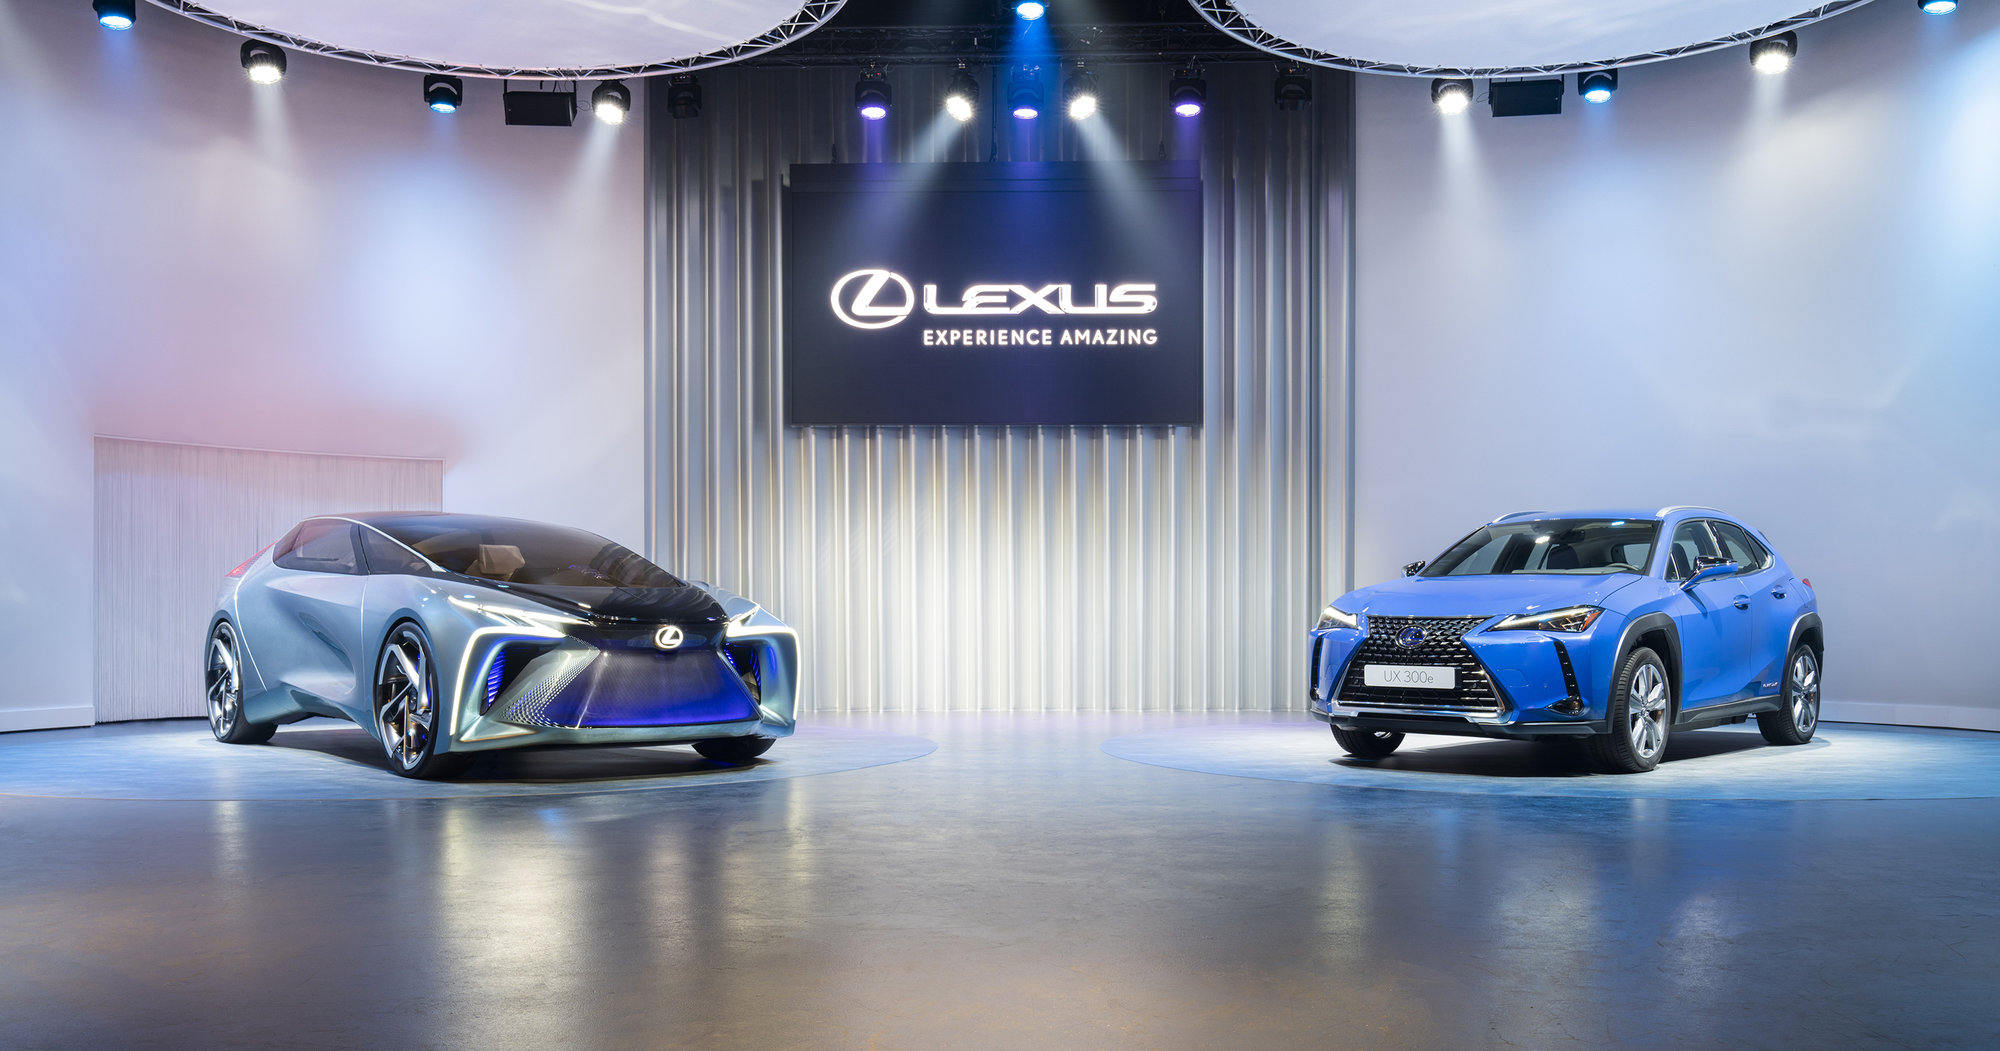 Galería: Lexus anuncia cuatro presentaciones para Europa en el Salón del Automóvil de Ginebra 2020